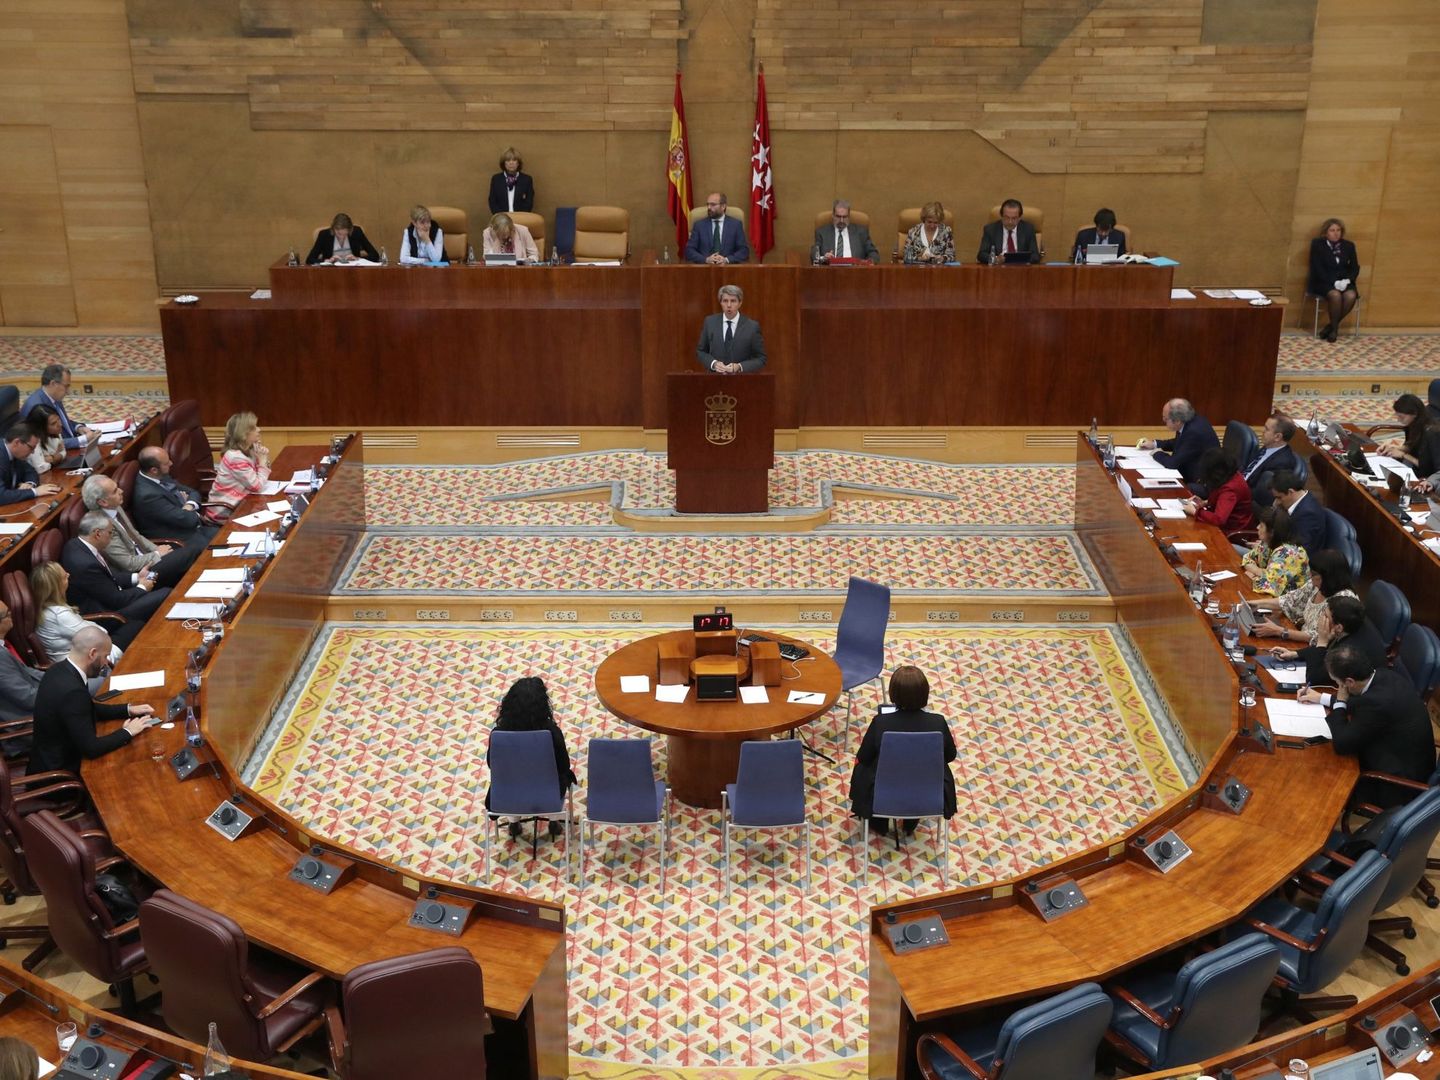 Los cuatro partidos con representación en la Asamblea de Madrid tienen actualmente alcaldes imputados por unas causas u otras.